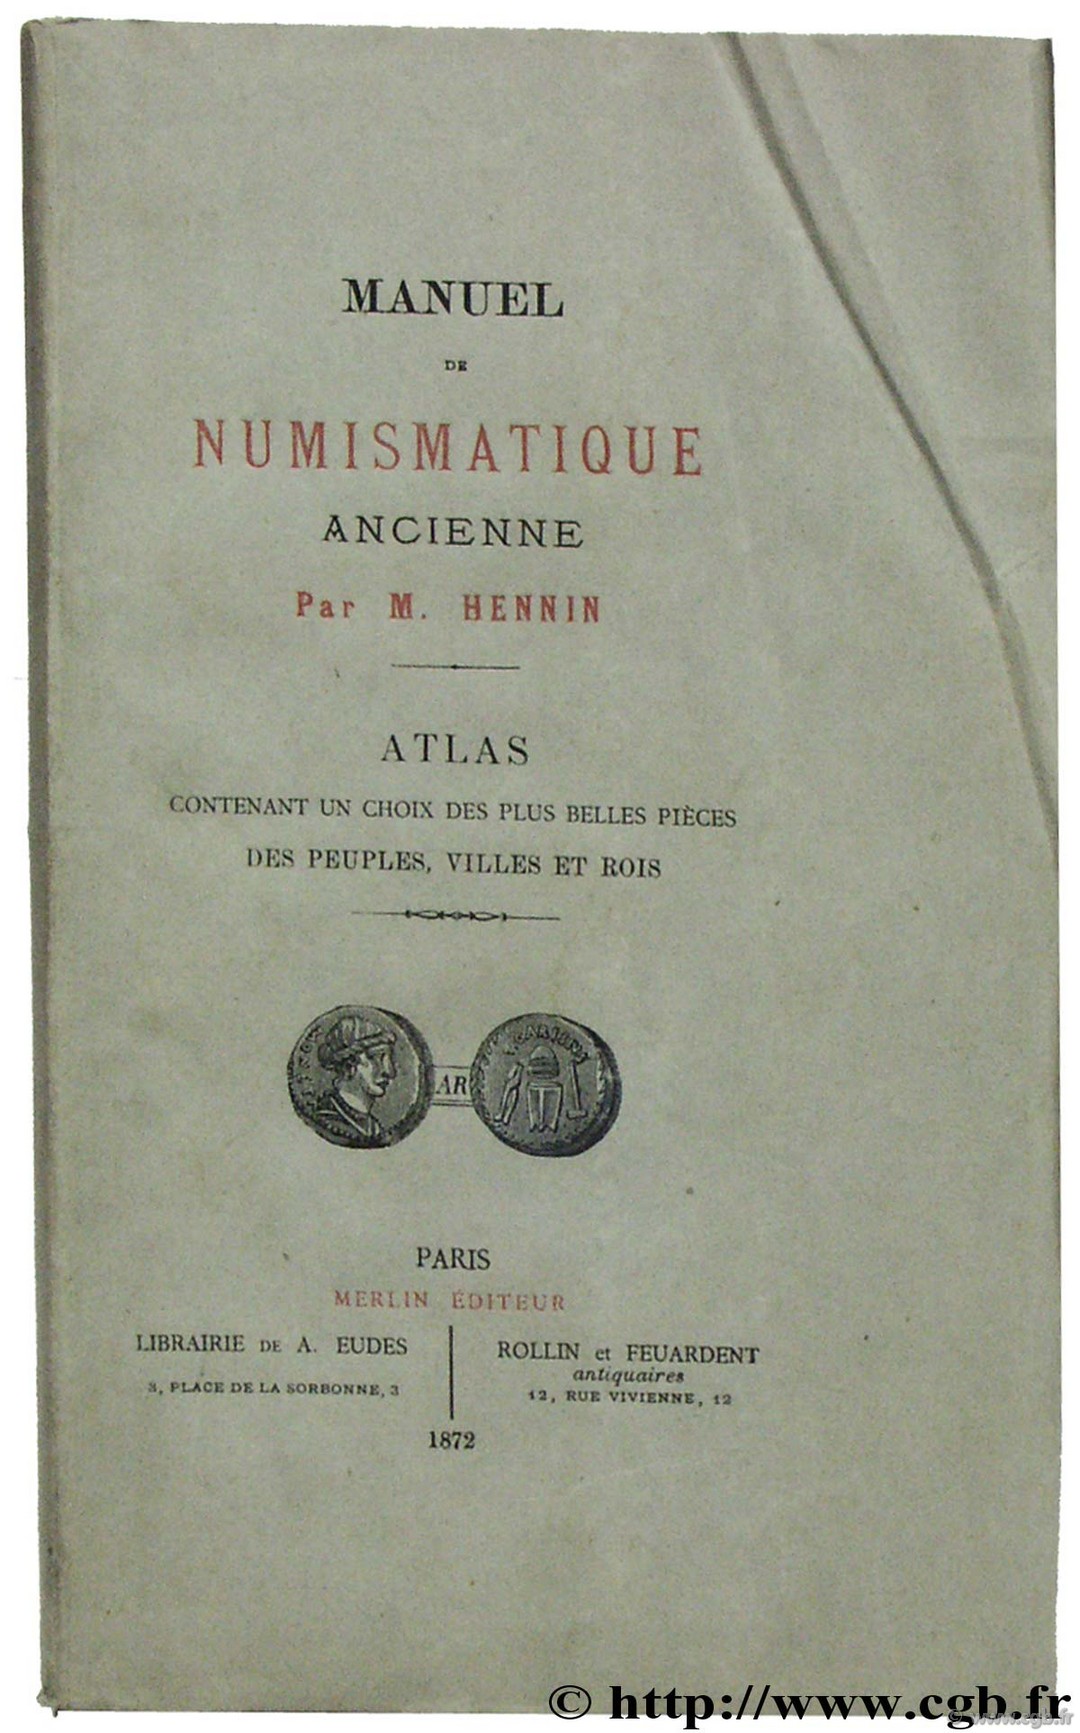 Manuel de numismatique ancienne, Atlas contenant un choix des plus belles pièces des peuples, villes et rois HENNIN M.